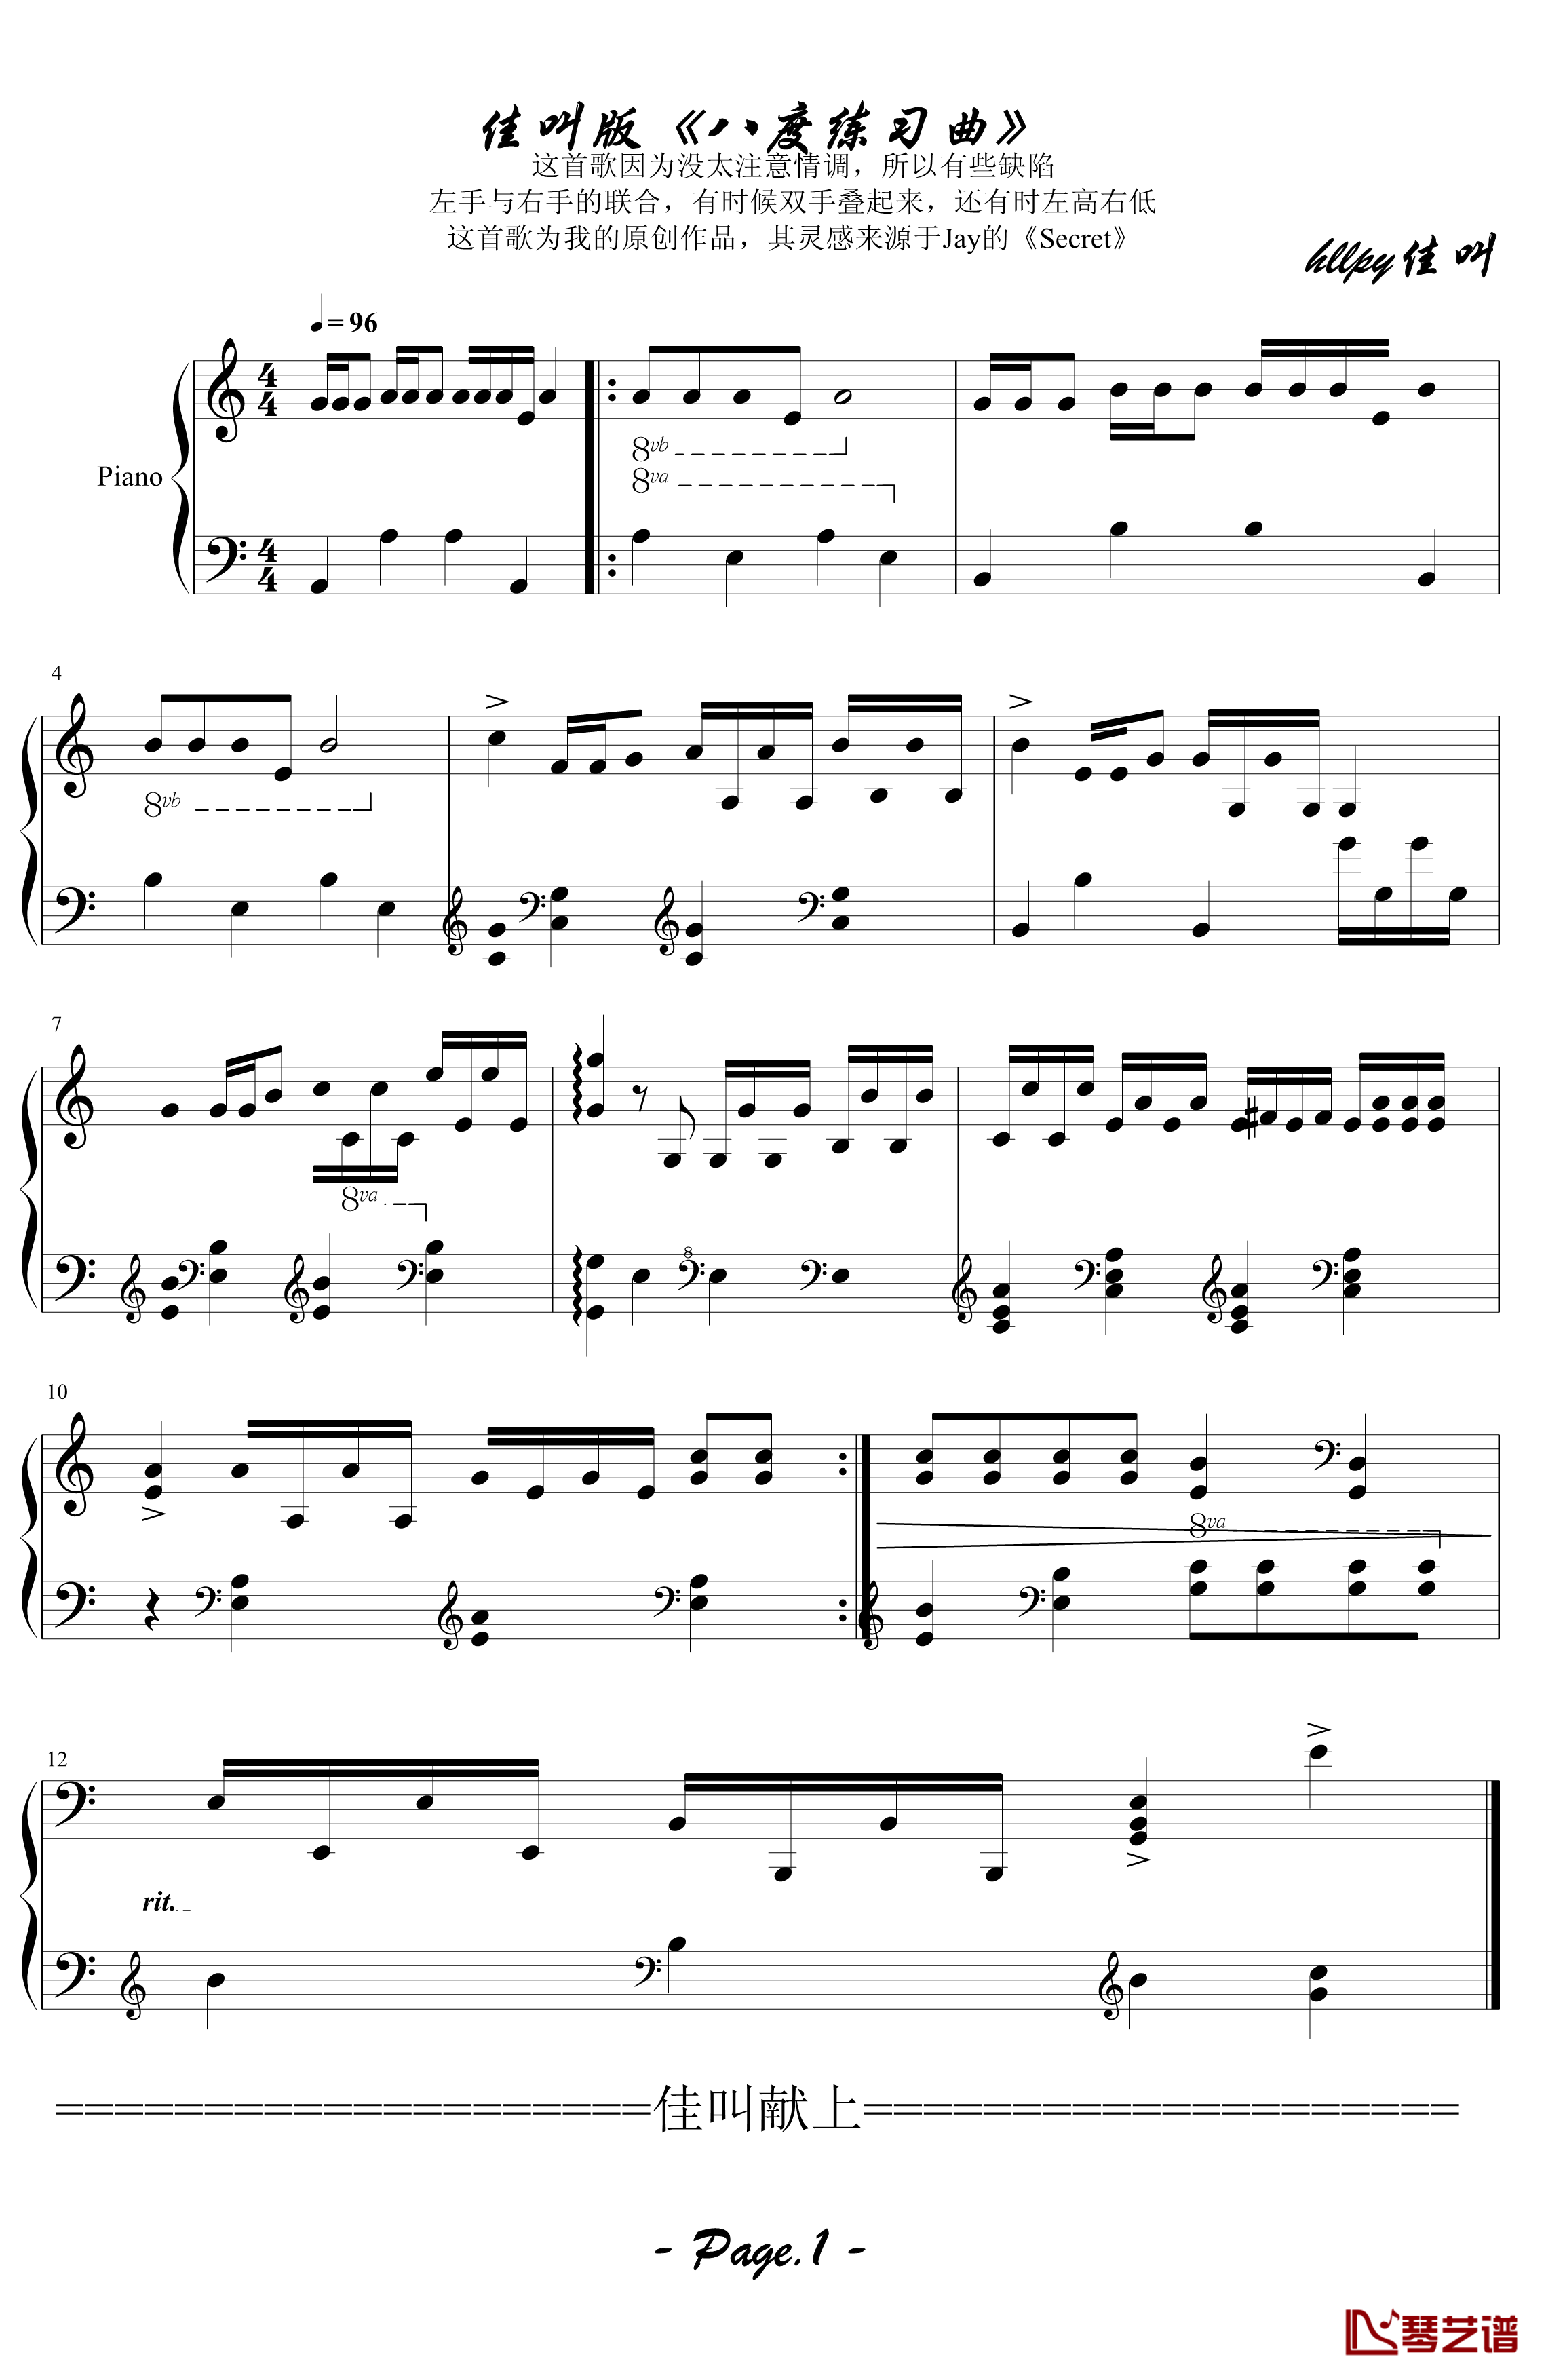 简单八度练习曲钢琴谱-佳叫版-hllpy3331